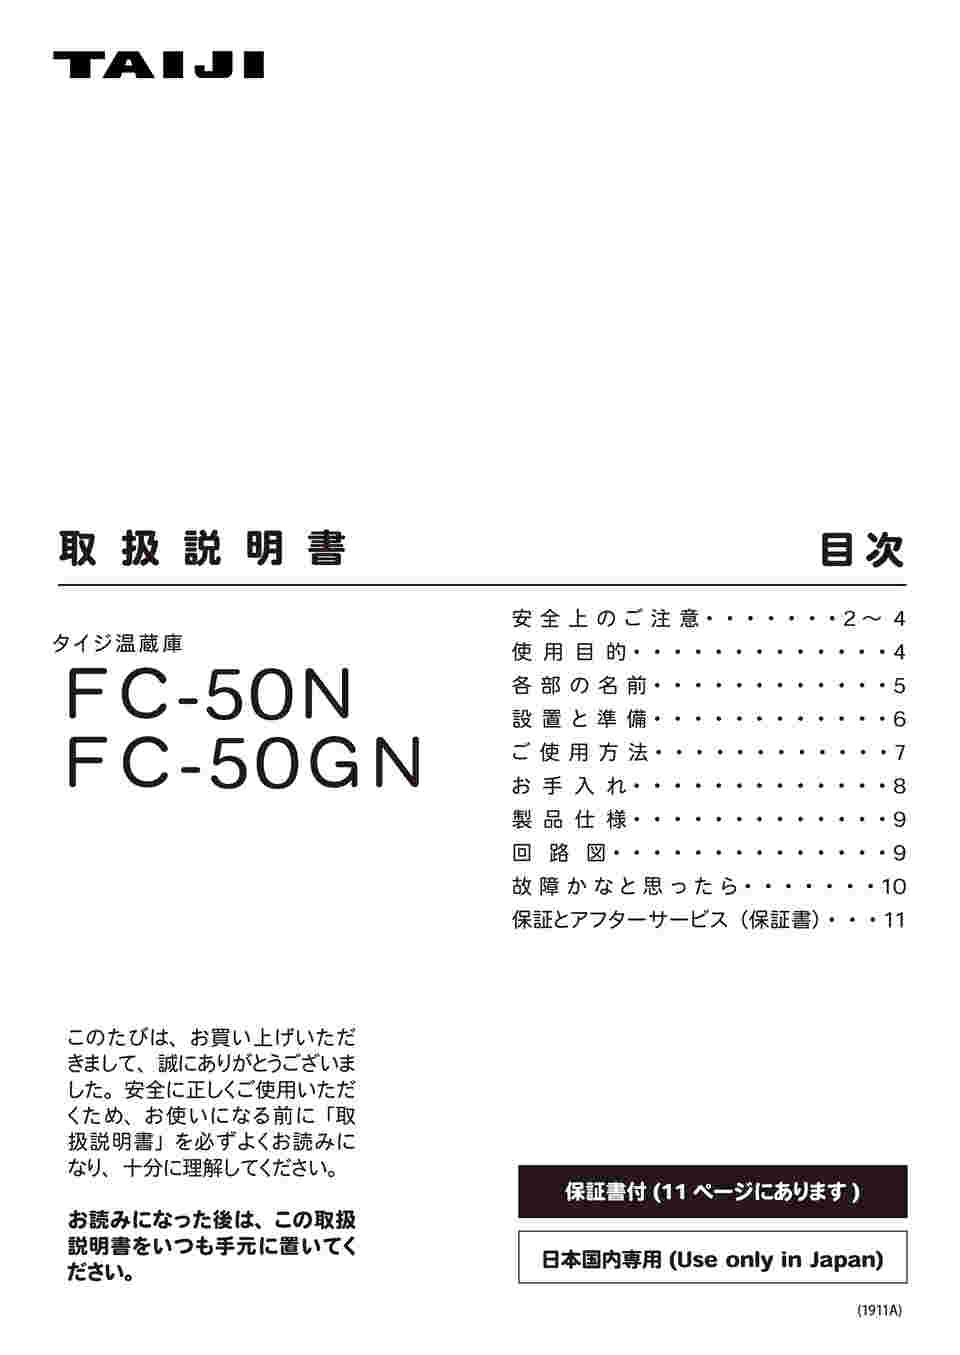 タイジ フードキャビ FC-50N - 4